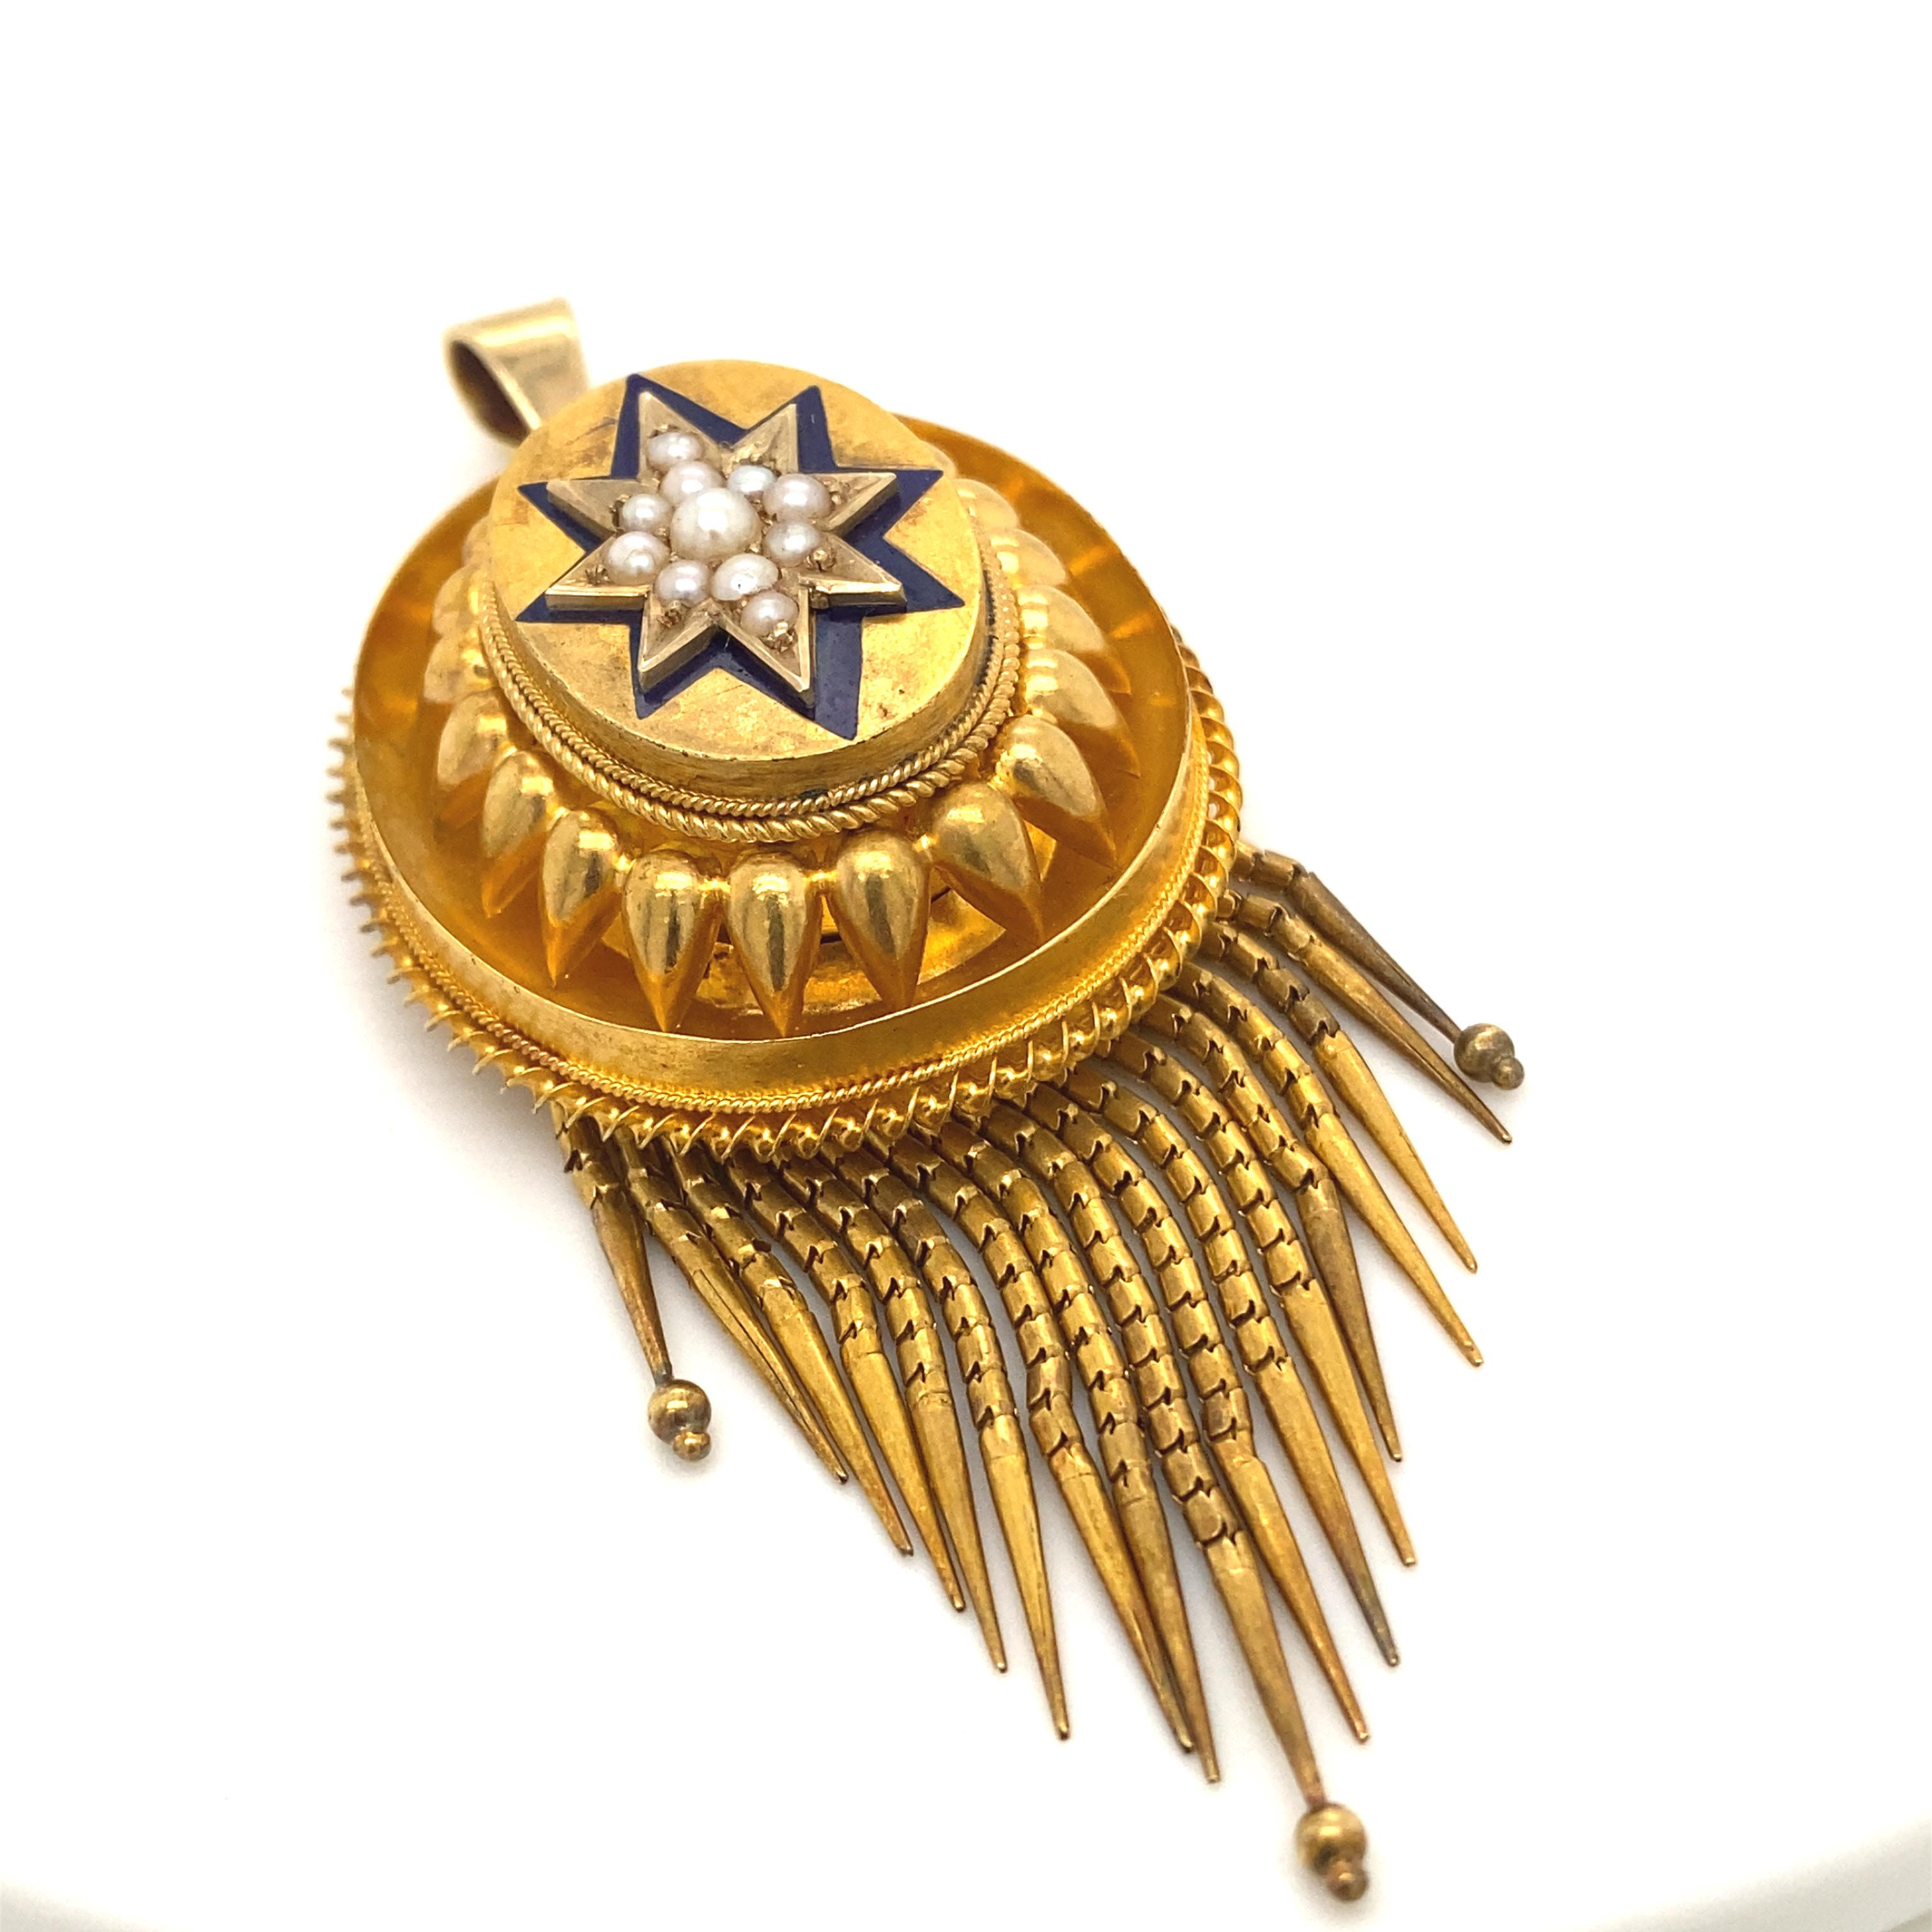 Un pendentif victorien en or jaune 18 carats serti d'émail et de perles, vers 1860.

Cet exquis pendentif victorien en or jaune est en excellent état pour son âge.
Un travail d'émail bleu en forme d'étoile entoure une grappe de perles pour former la